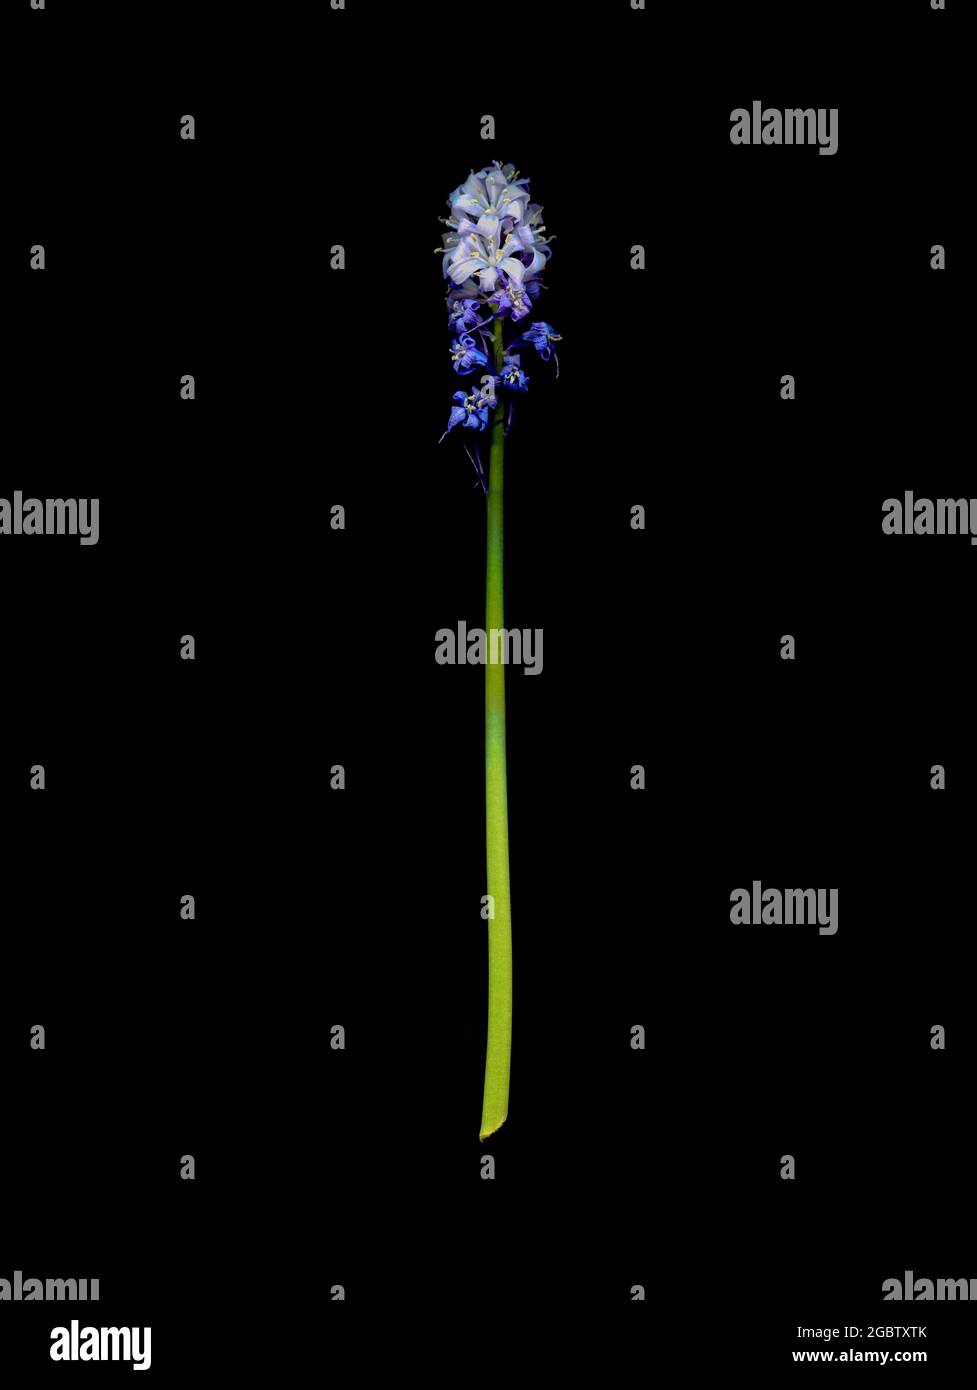 Un picco del bluebell comune, un giacinto selvaggio, passato il suo meglio, e insolito in quanto porta fiori sia viola che bianchi. Foto Stock